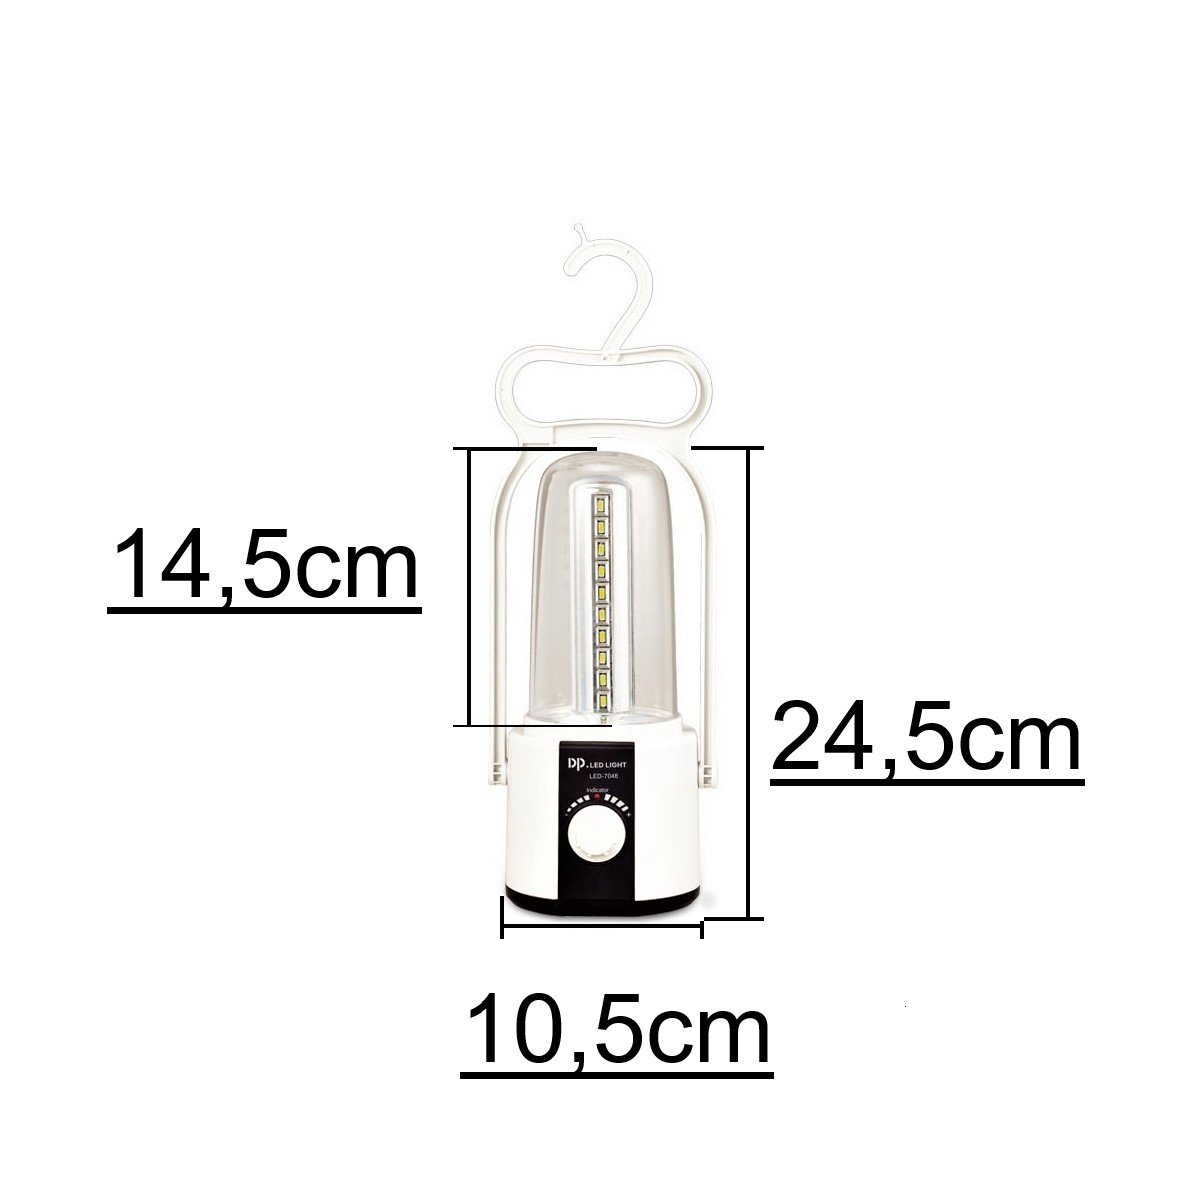 Lampião Com 40 Leds Recarregável 2800mAh 8W Portátil Bivolt:Branco - 2